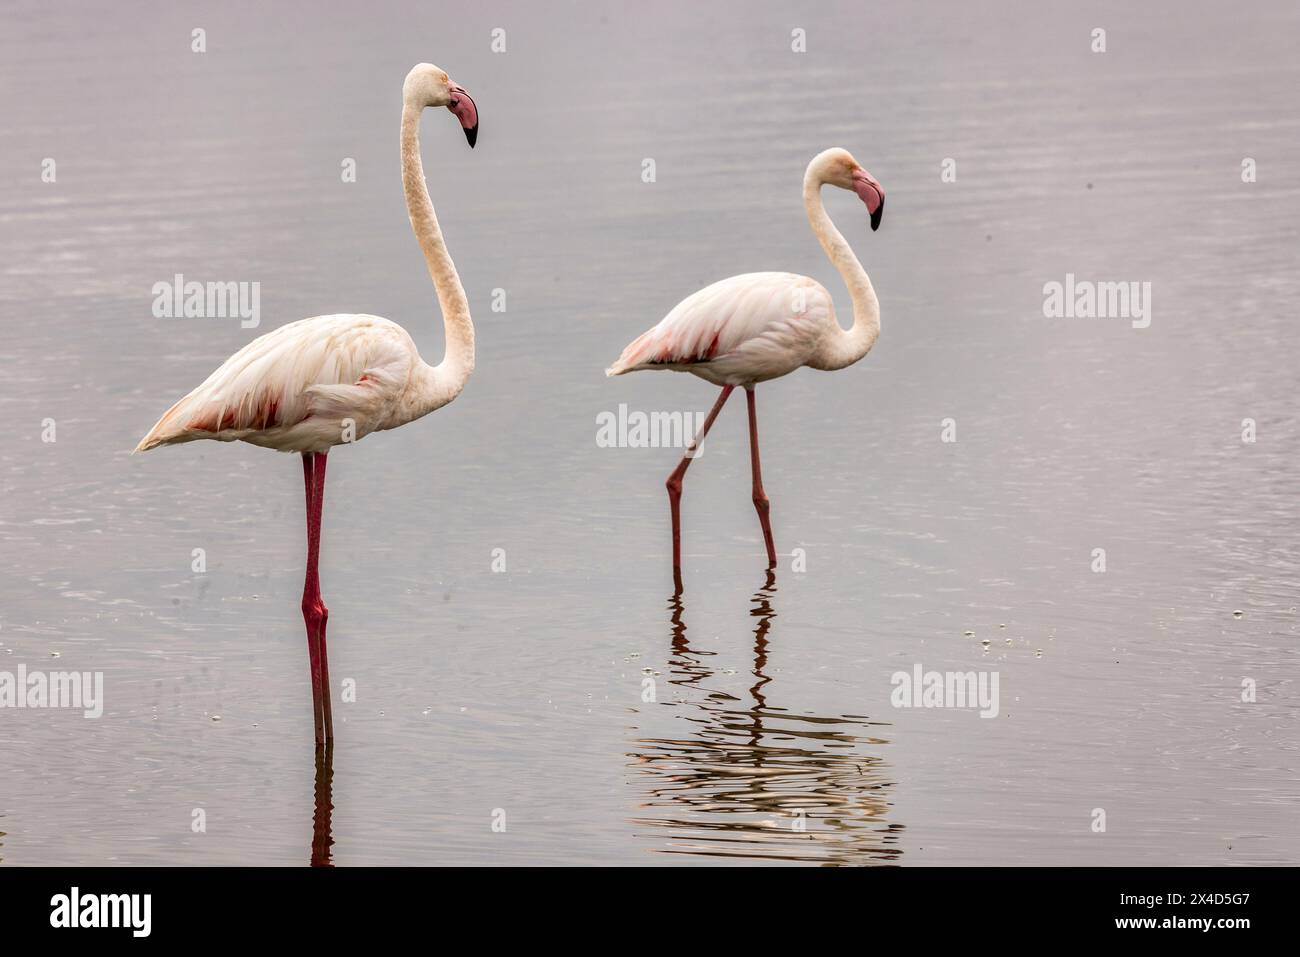 Flamingos, Amboseli National Park, Africa Stock Photo